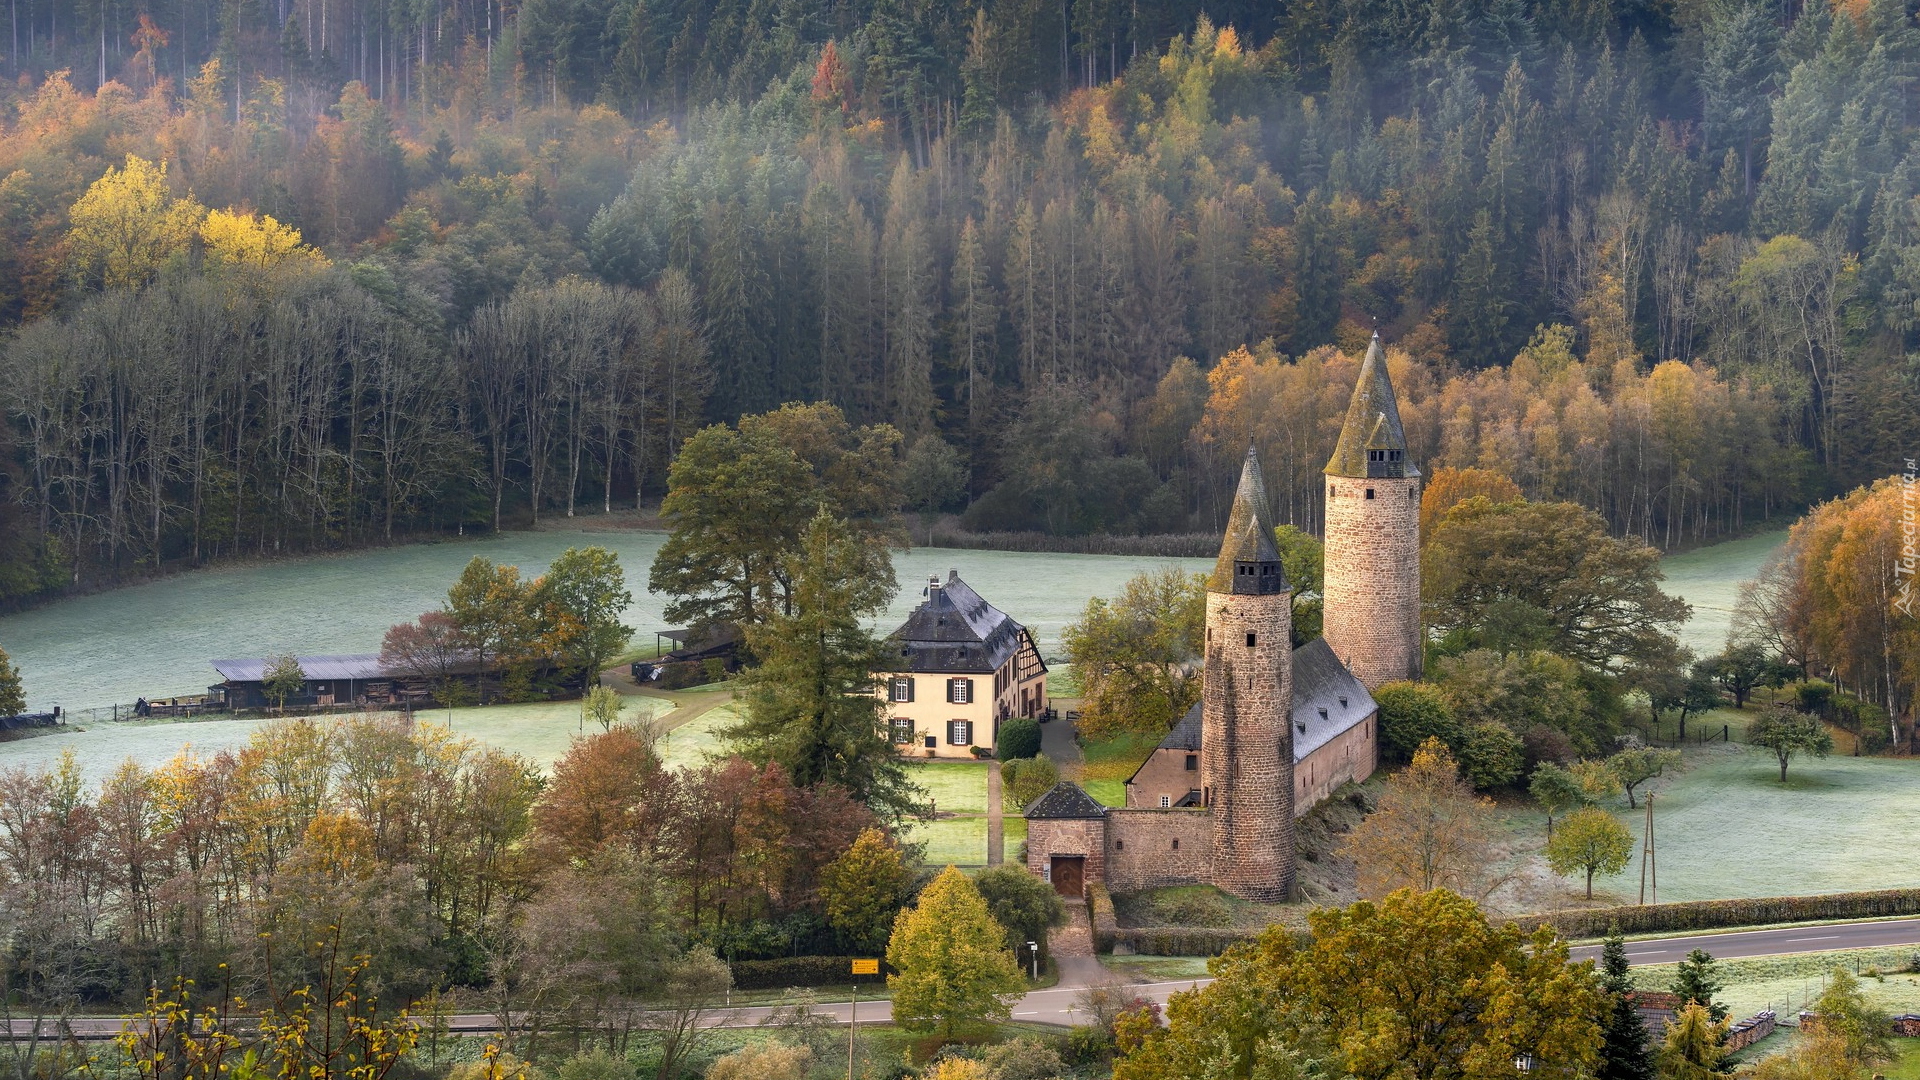 Zamek w Burch, Dom, Las, Drzewa, Nadrenia-Palatynat, Niemcy